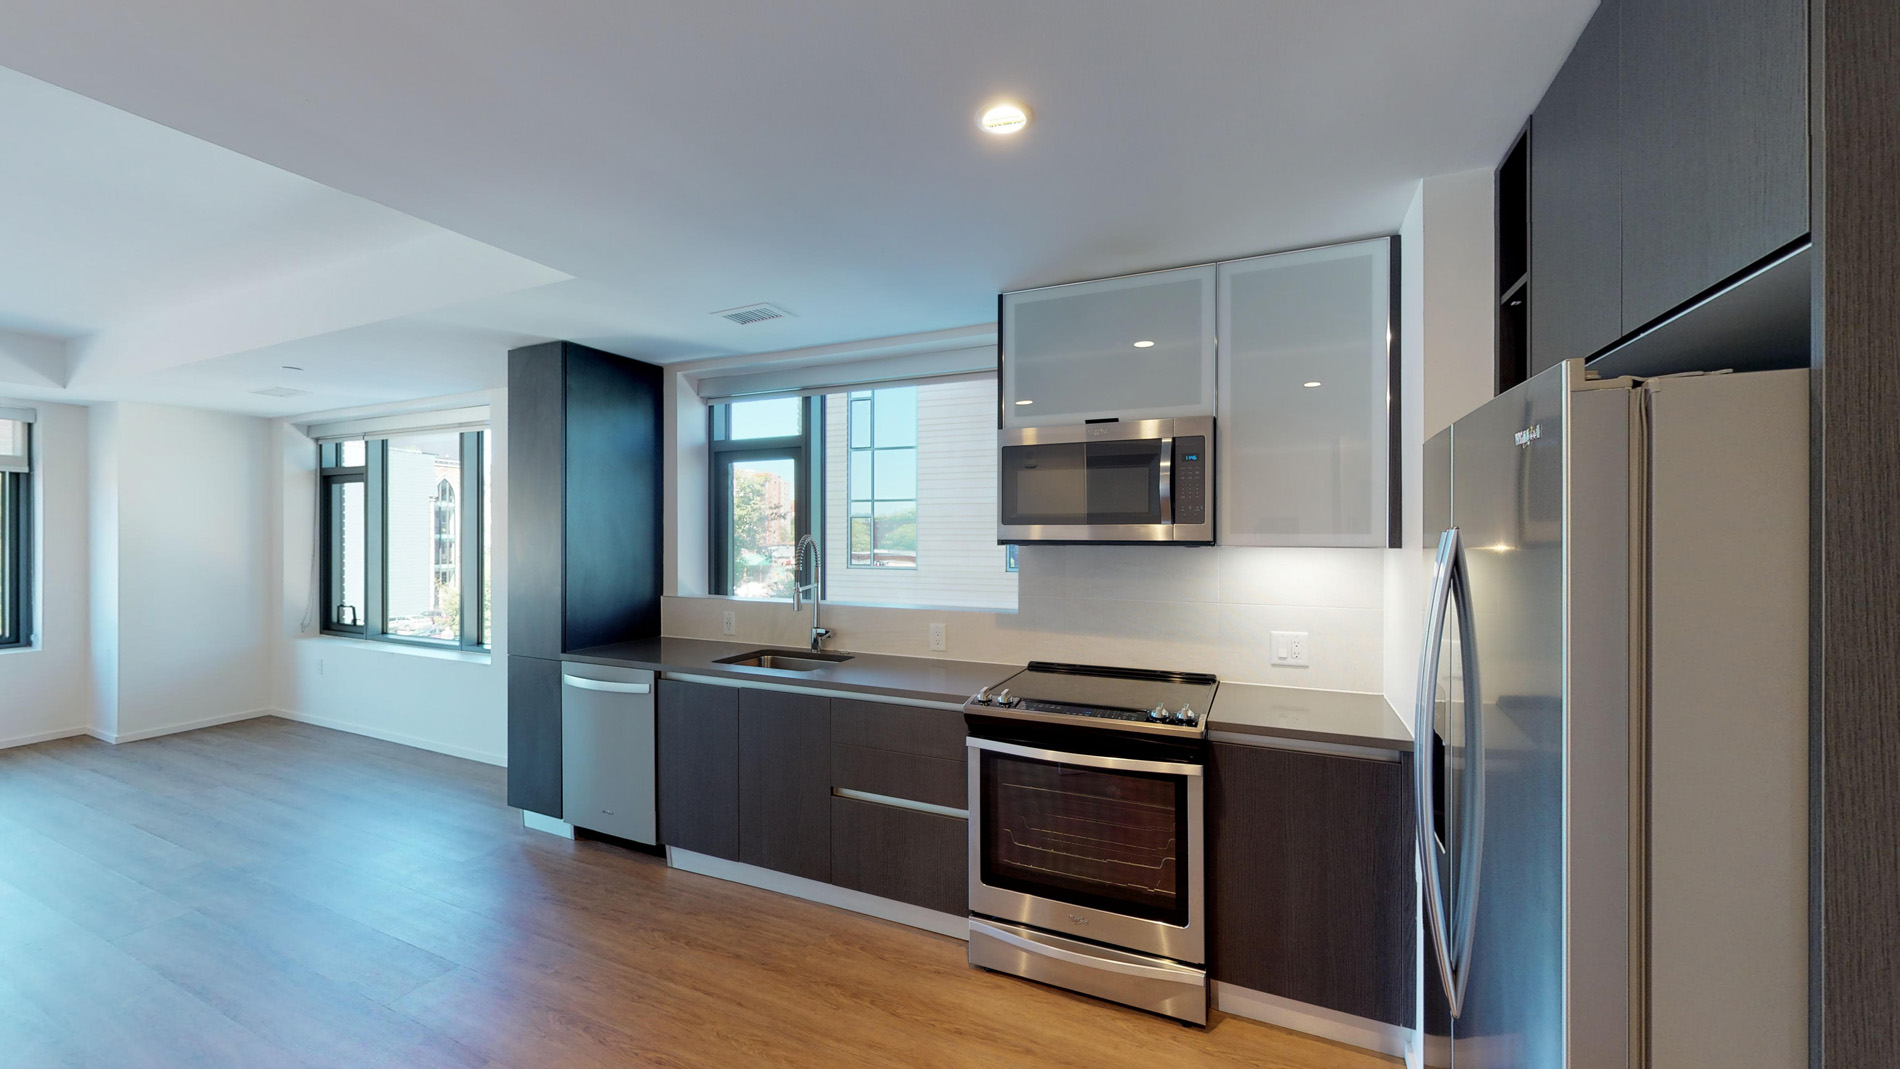 Photos of apartment on Washington,Boston MA 02118